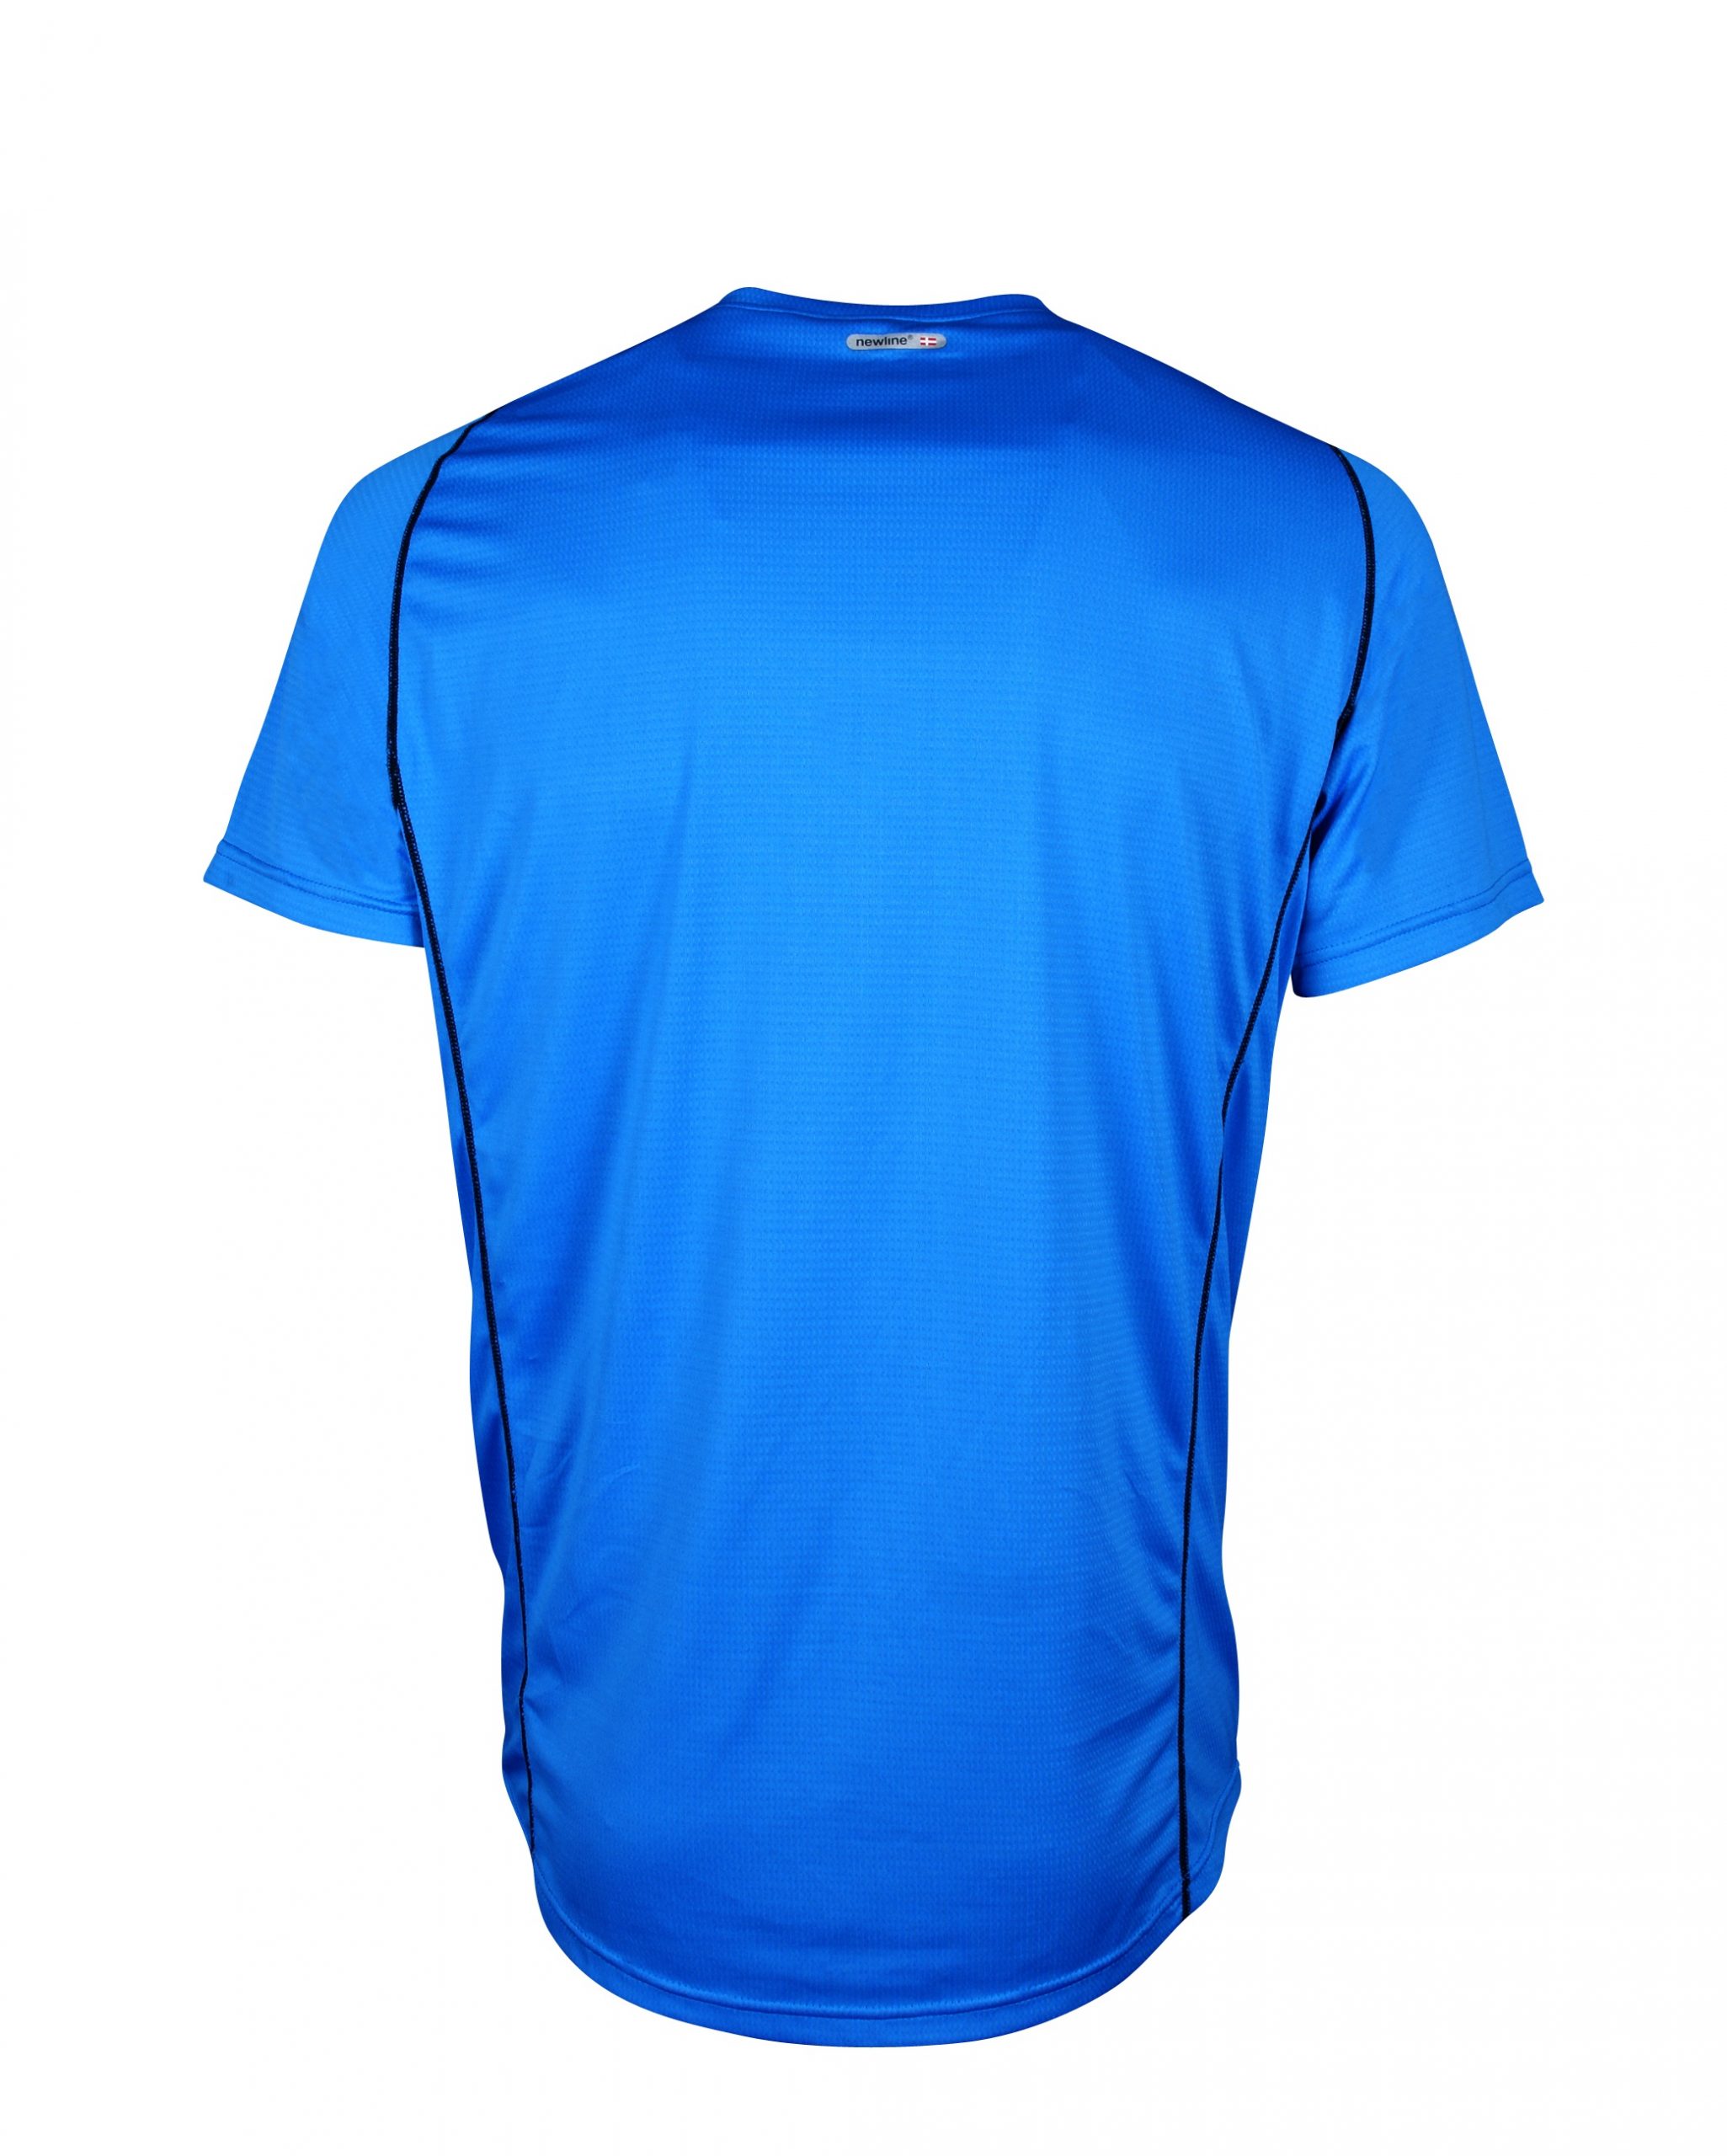 Newline Men's Base Coolmax Tee Shirt is lightweight for running